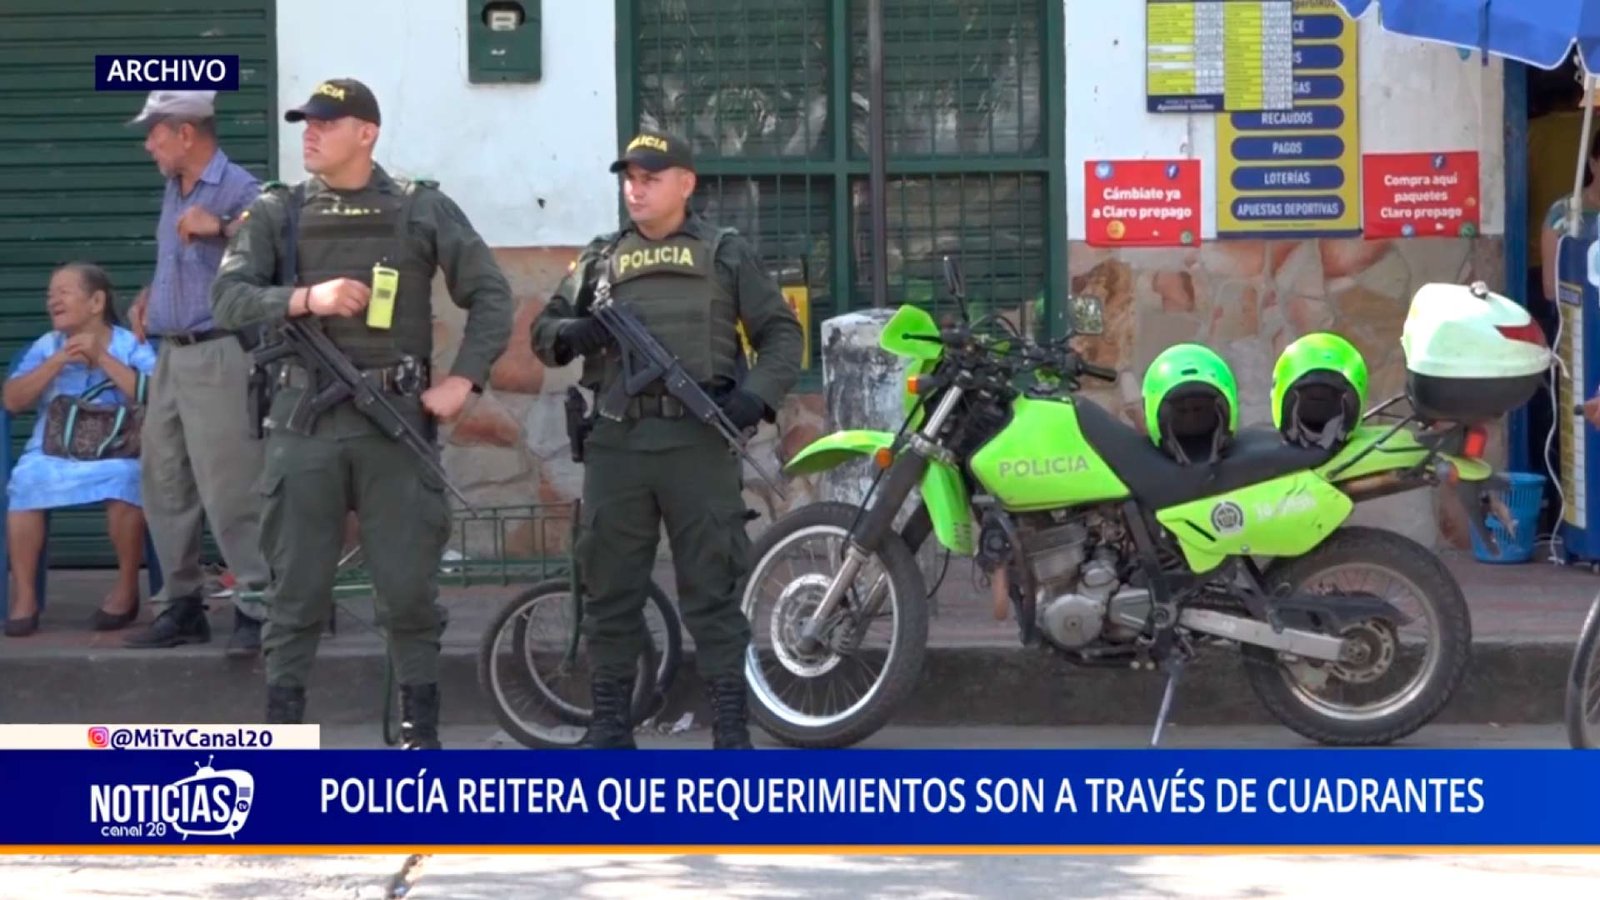 POLICÍA REITERA QUE REQUERIMIENTOS SON A TRAVÉS DE CUADRANTES